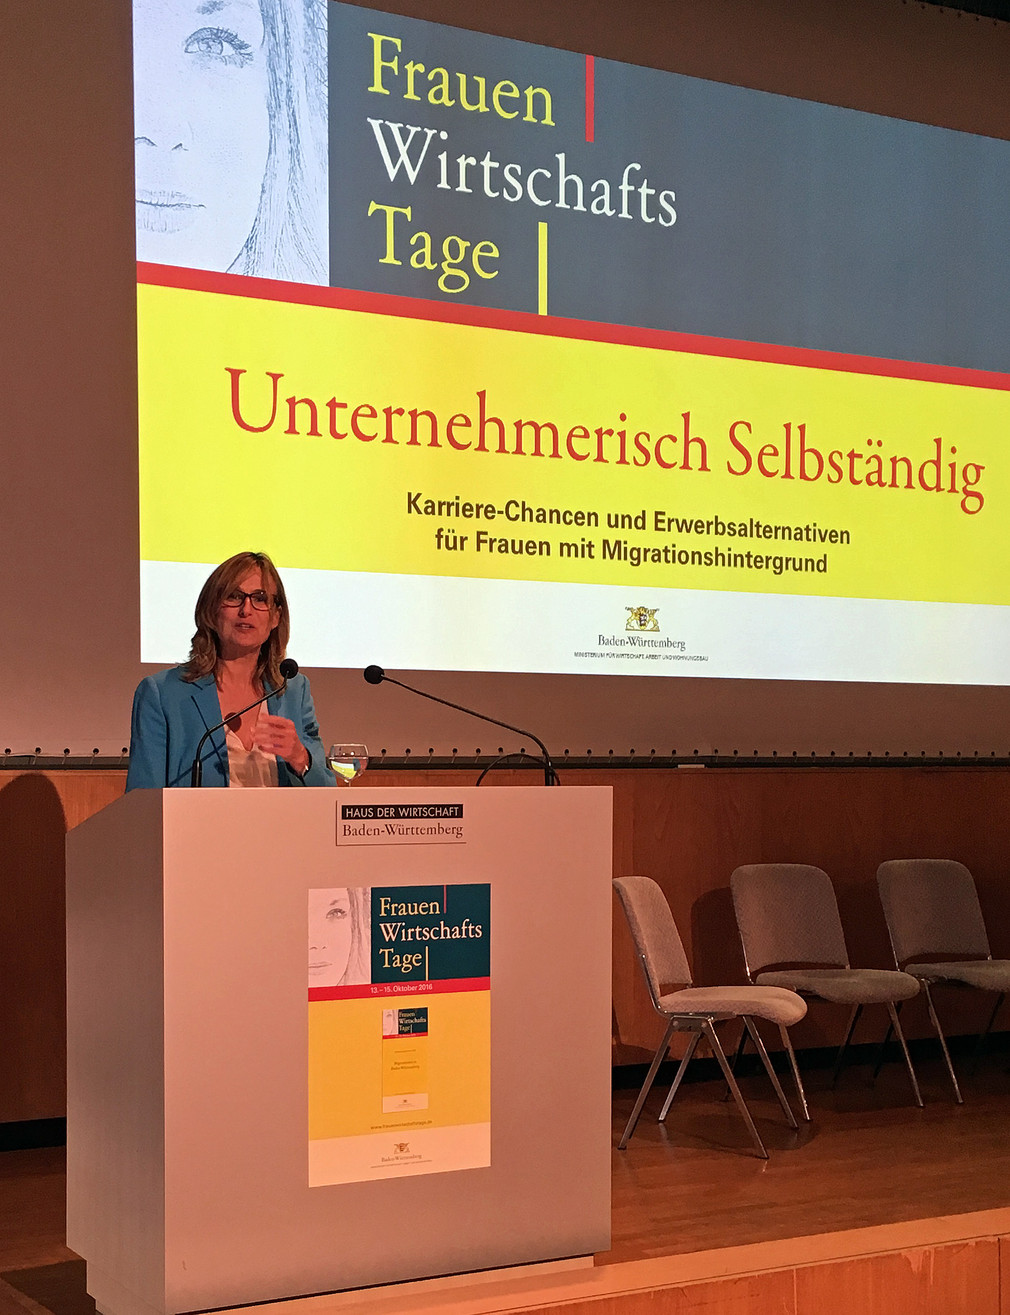 Staatssekretärin Katrin Schütz eröffnete die Auftaktveranstaltung der 12. Frauenwirtschaftstage die vom 13. bis 15. Oktober 2016 unter dem Schwerpunktthema „Unternehmerisch Selbständig - Karrierechancen und Erwerbsalternativen für Frauen mit Migrationshintergrund“ stattfinden.